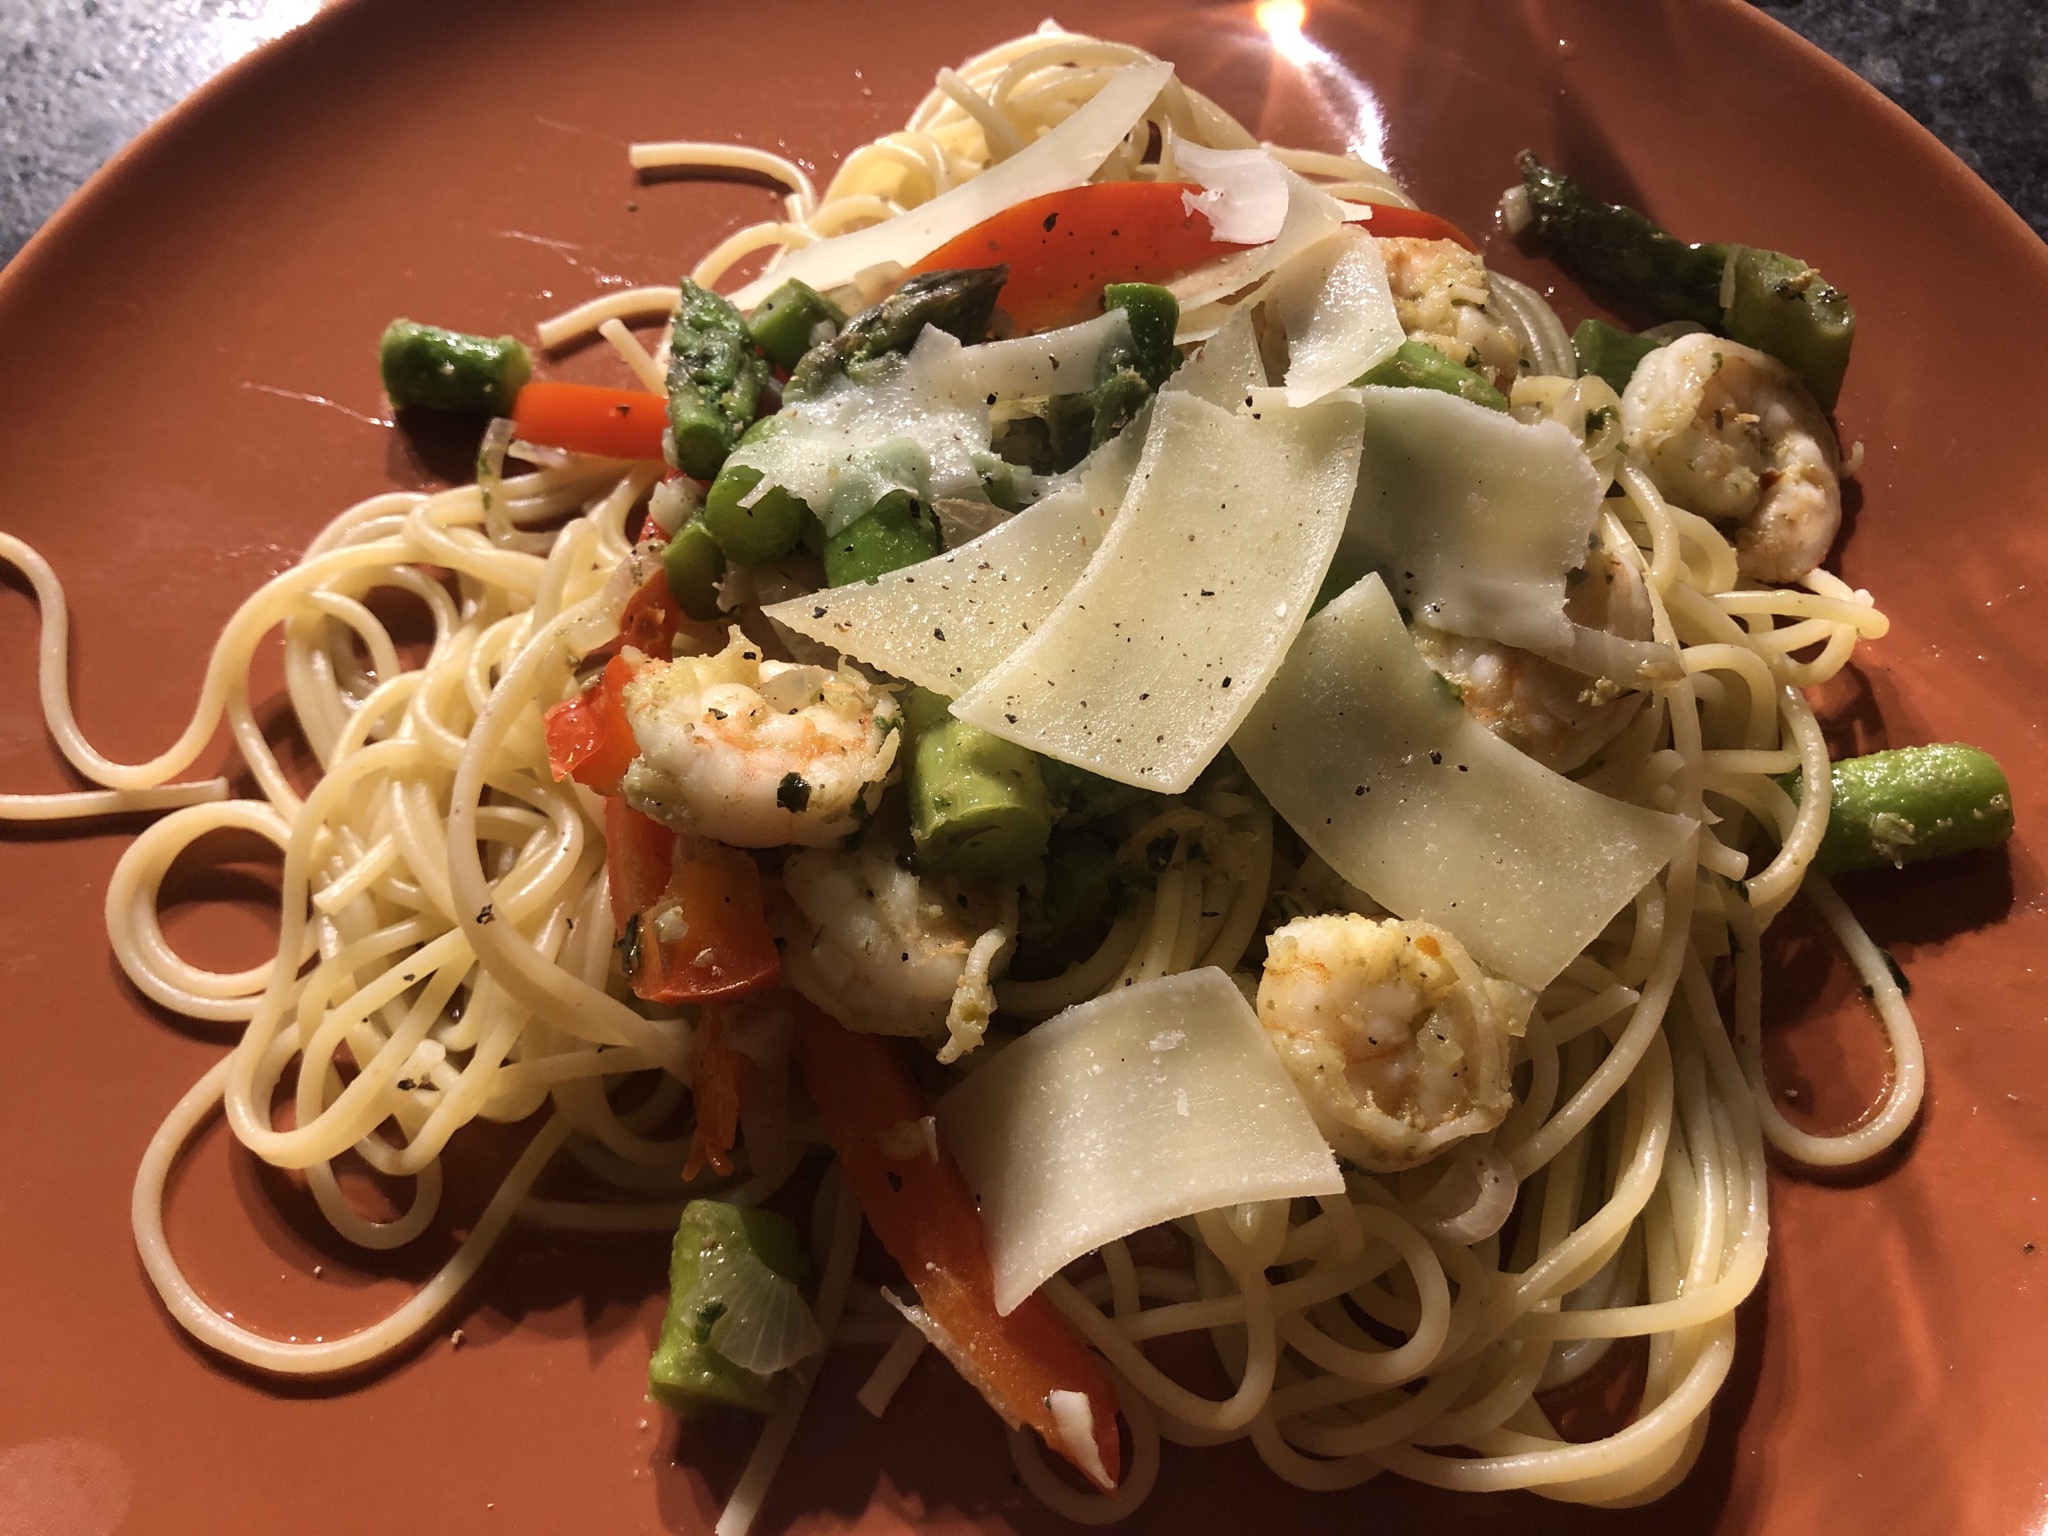 Shrimp and Asparagus with a Louisiana Twist